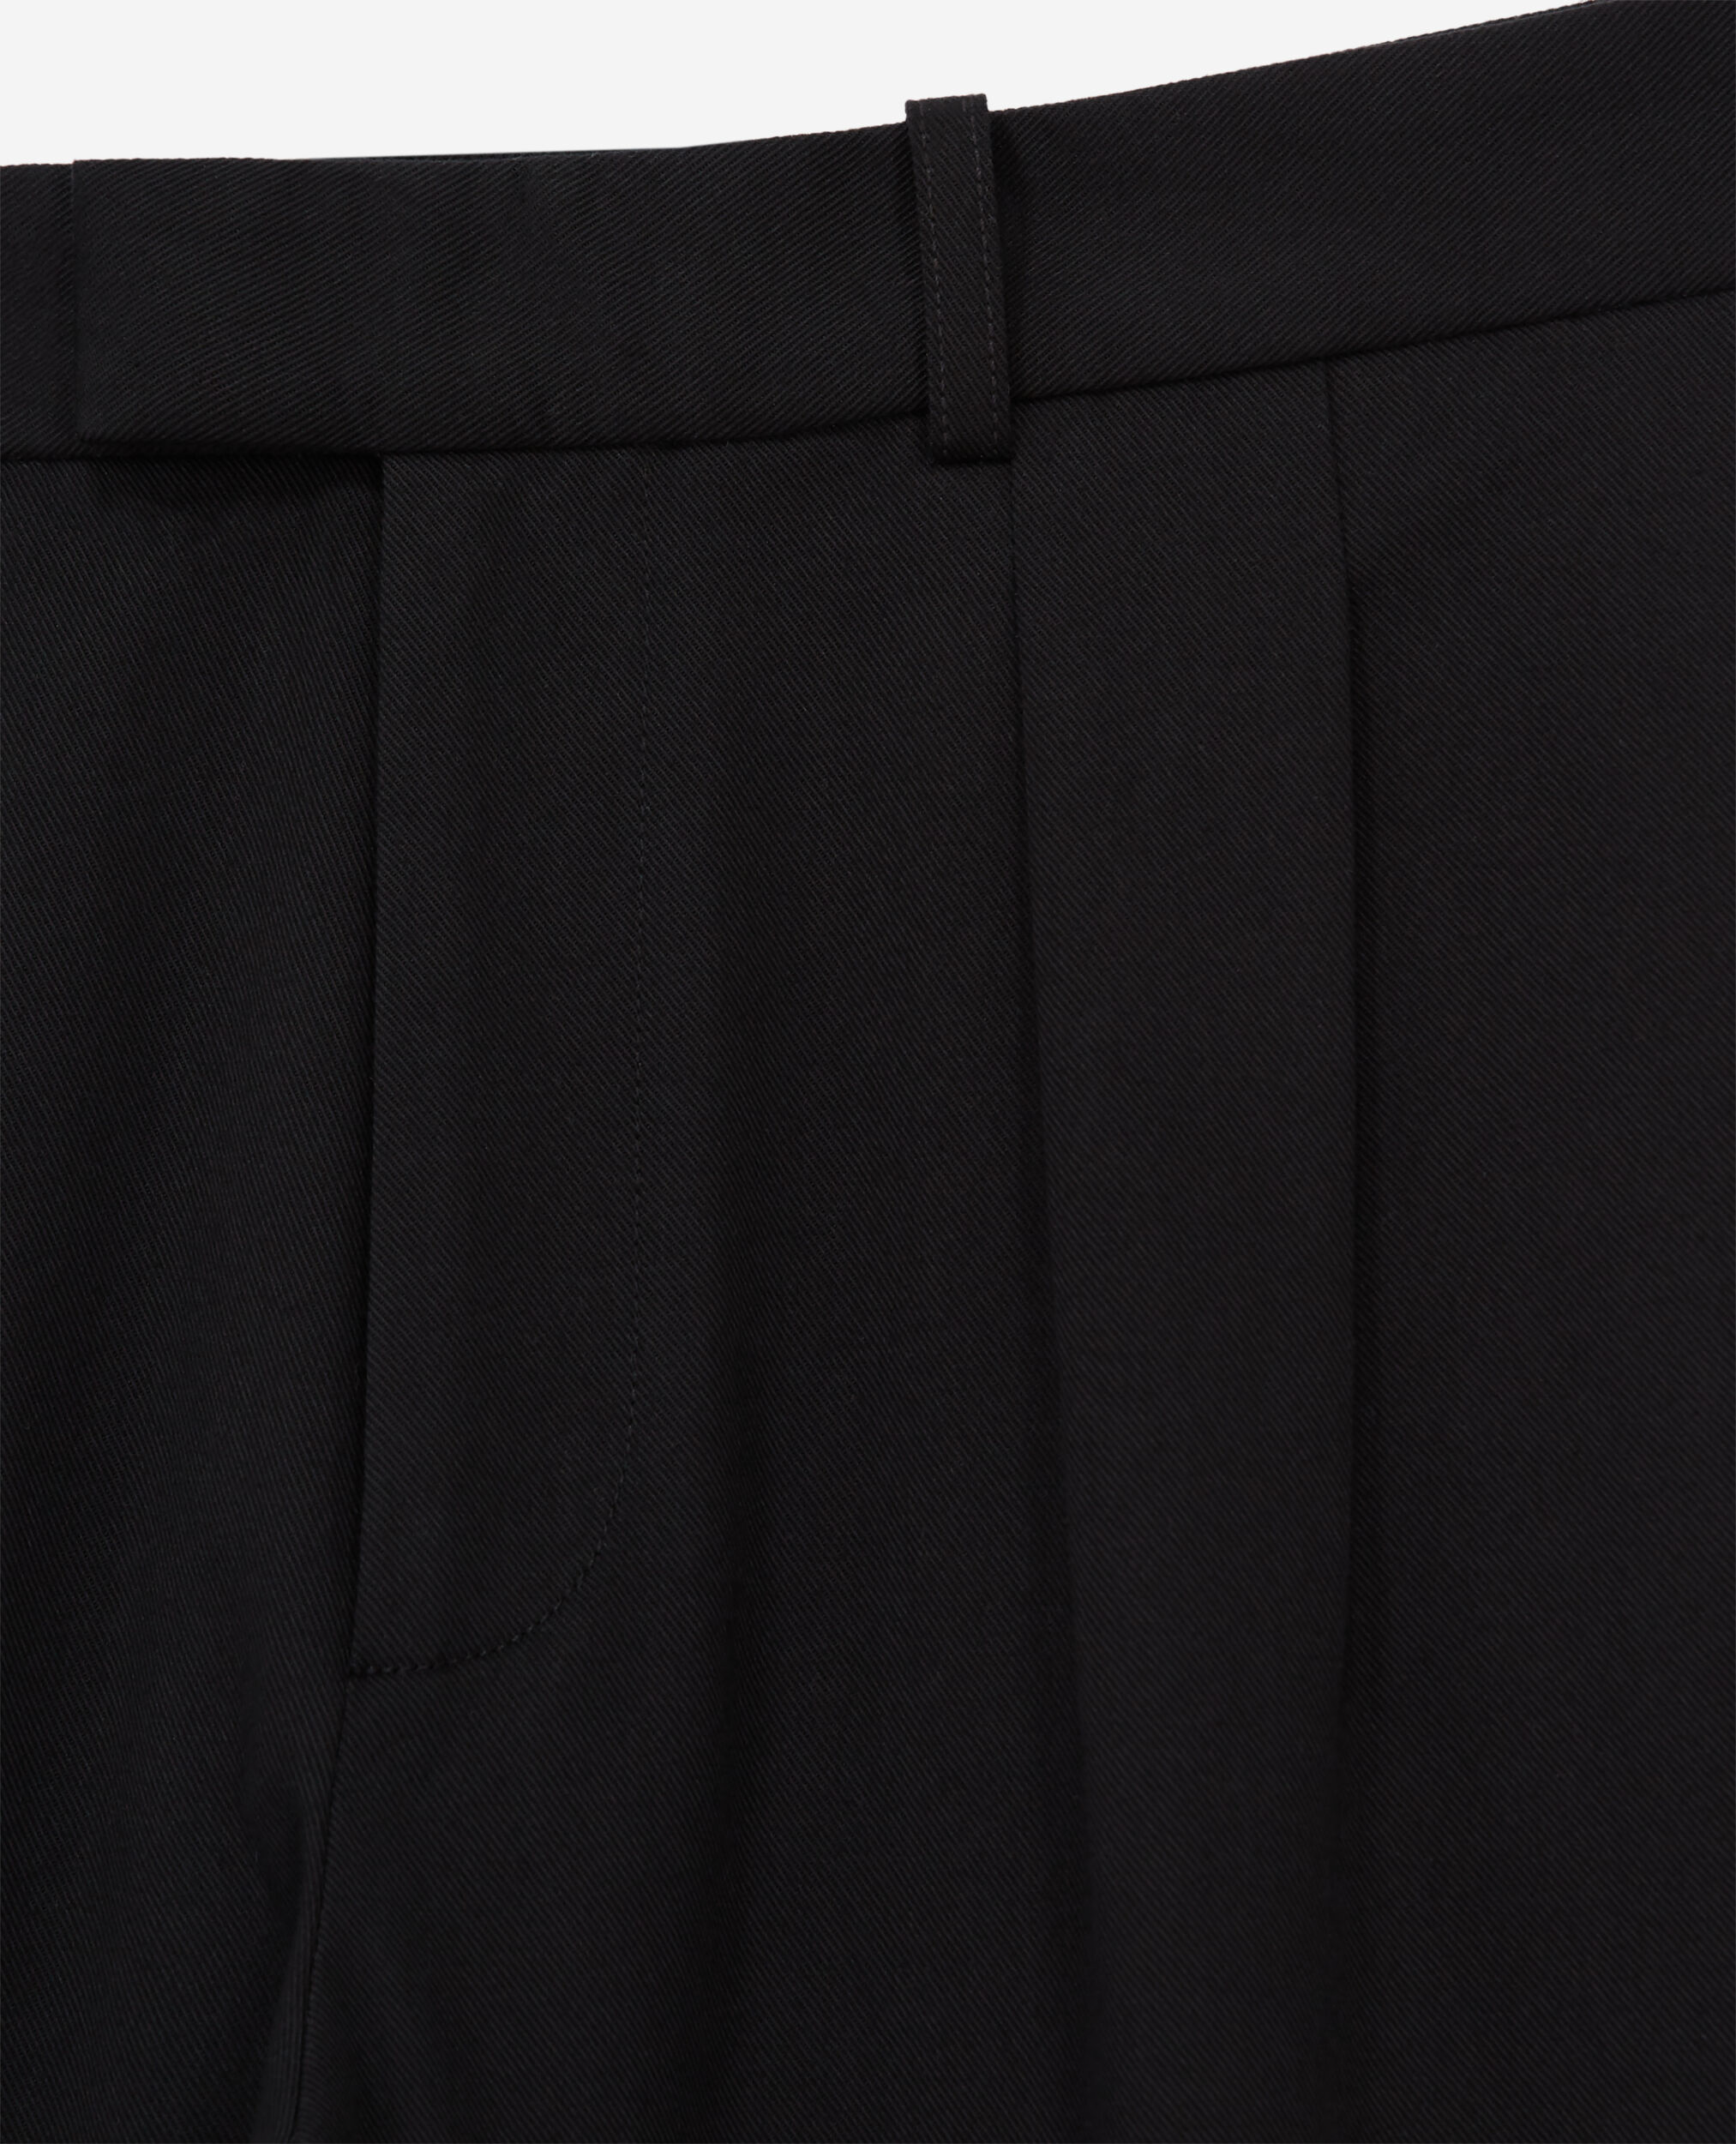 Pantalón ancho negro, BLACK, hi-res image number null